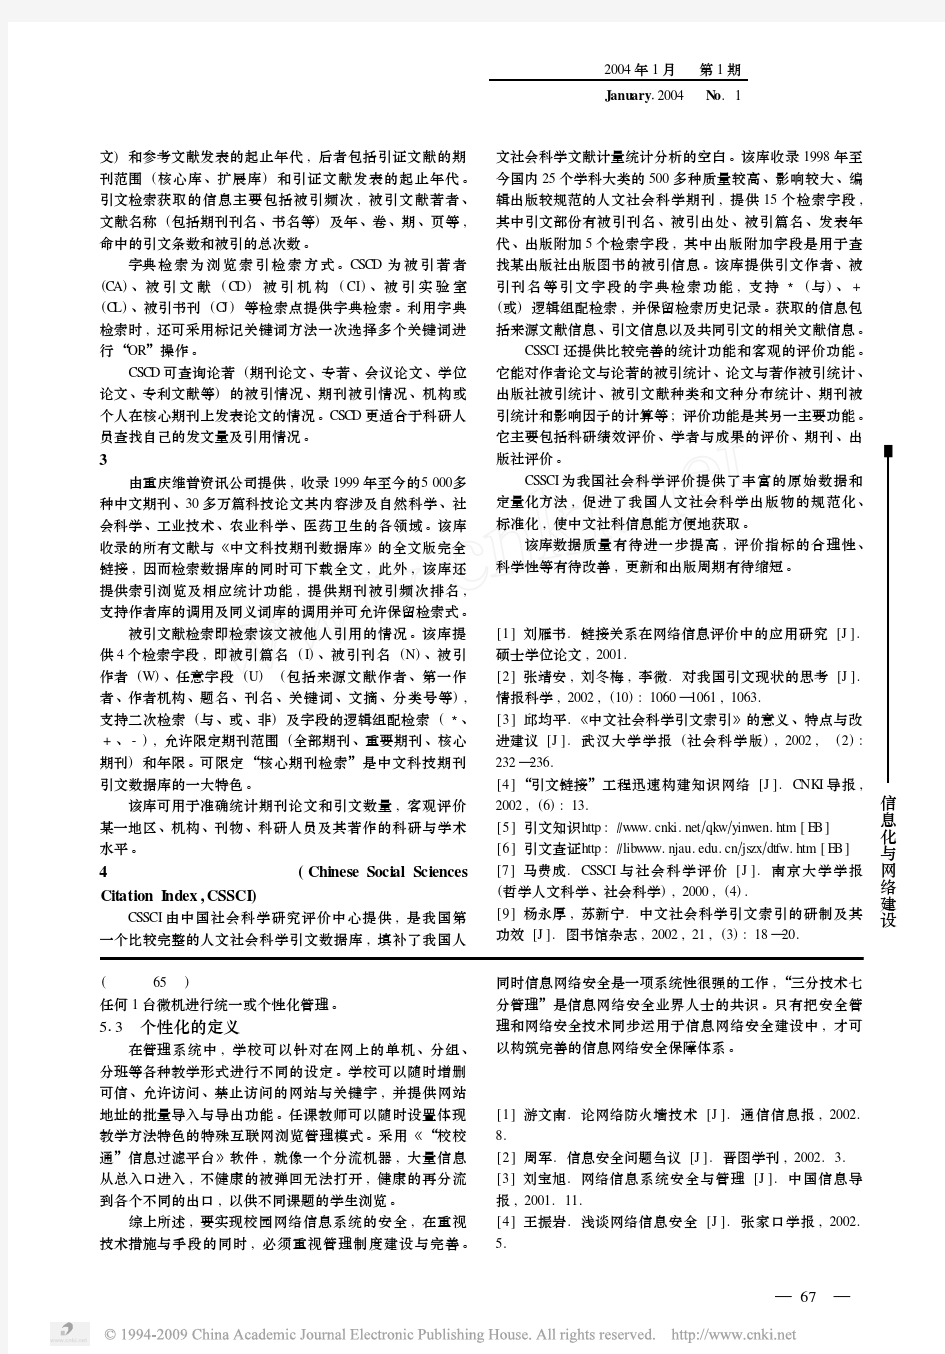 四种可检引文的中文数据库浅析